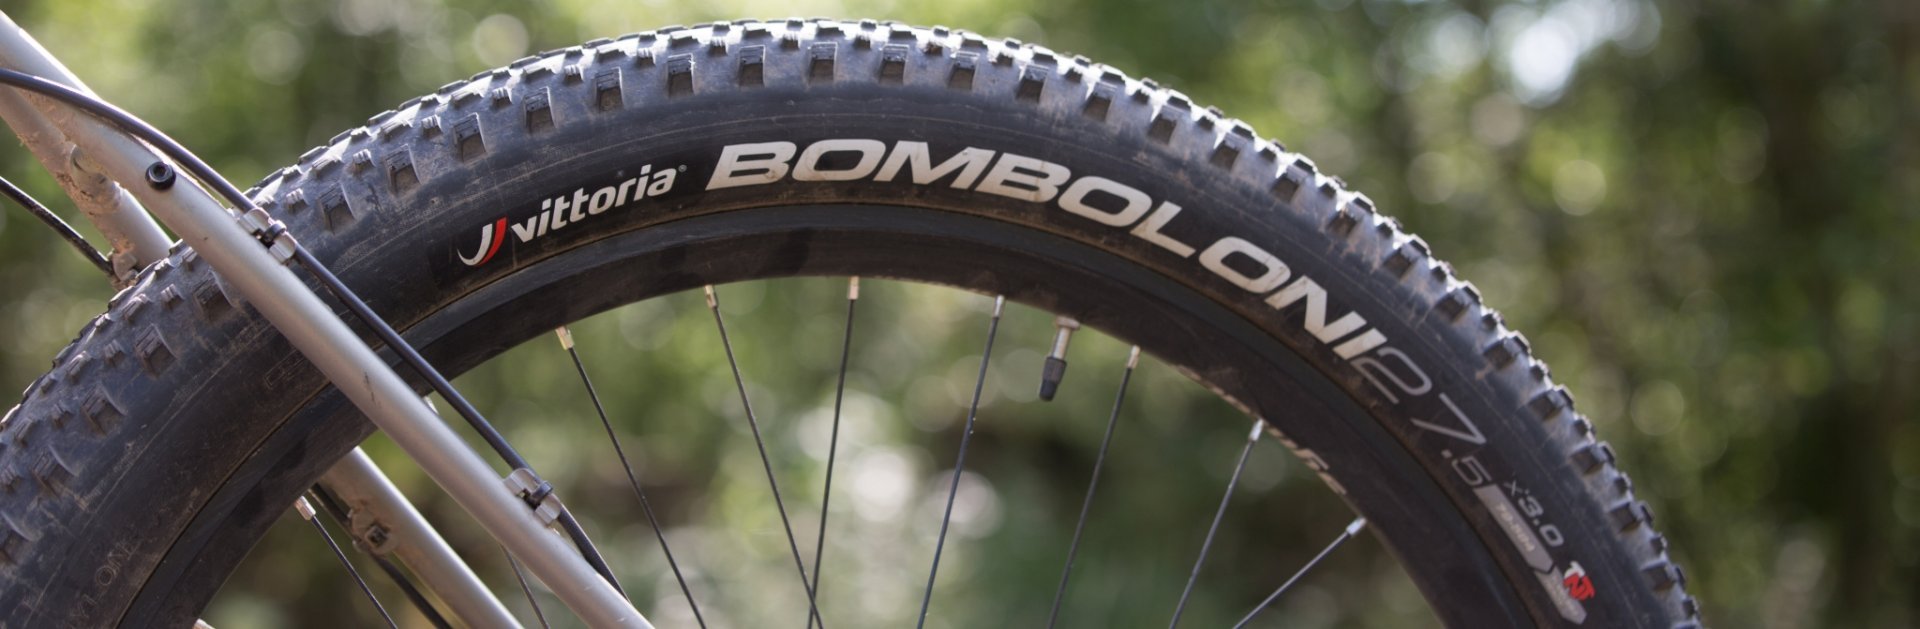 Die Bombolino Reifen sind super breit und bieten das perfekte Maß an Grip.